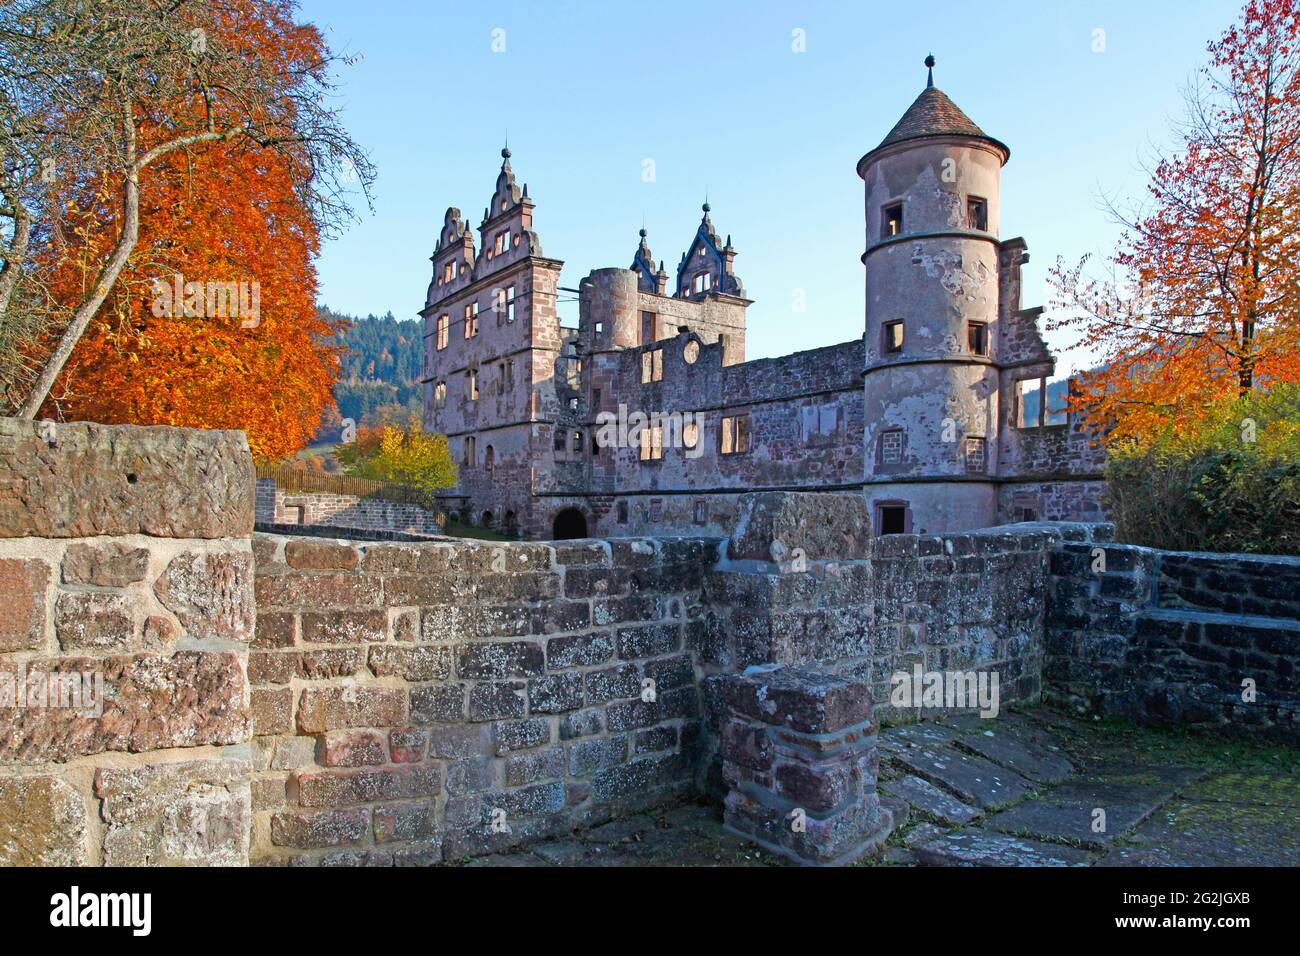 Château, construit de 1586 à 92, pendant la guerre de succession palatine, le château et le monastère ont été brafeu en 1692. Calw, quartier de Hirsau, Bade-Wurtemberg, Allemagne Banque D'Images